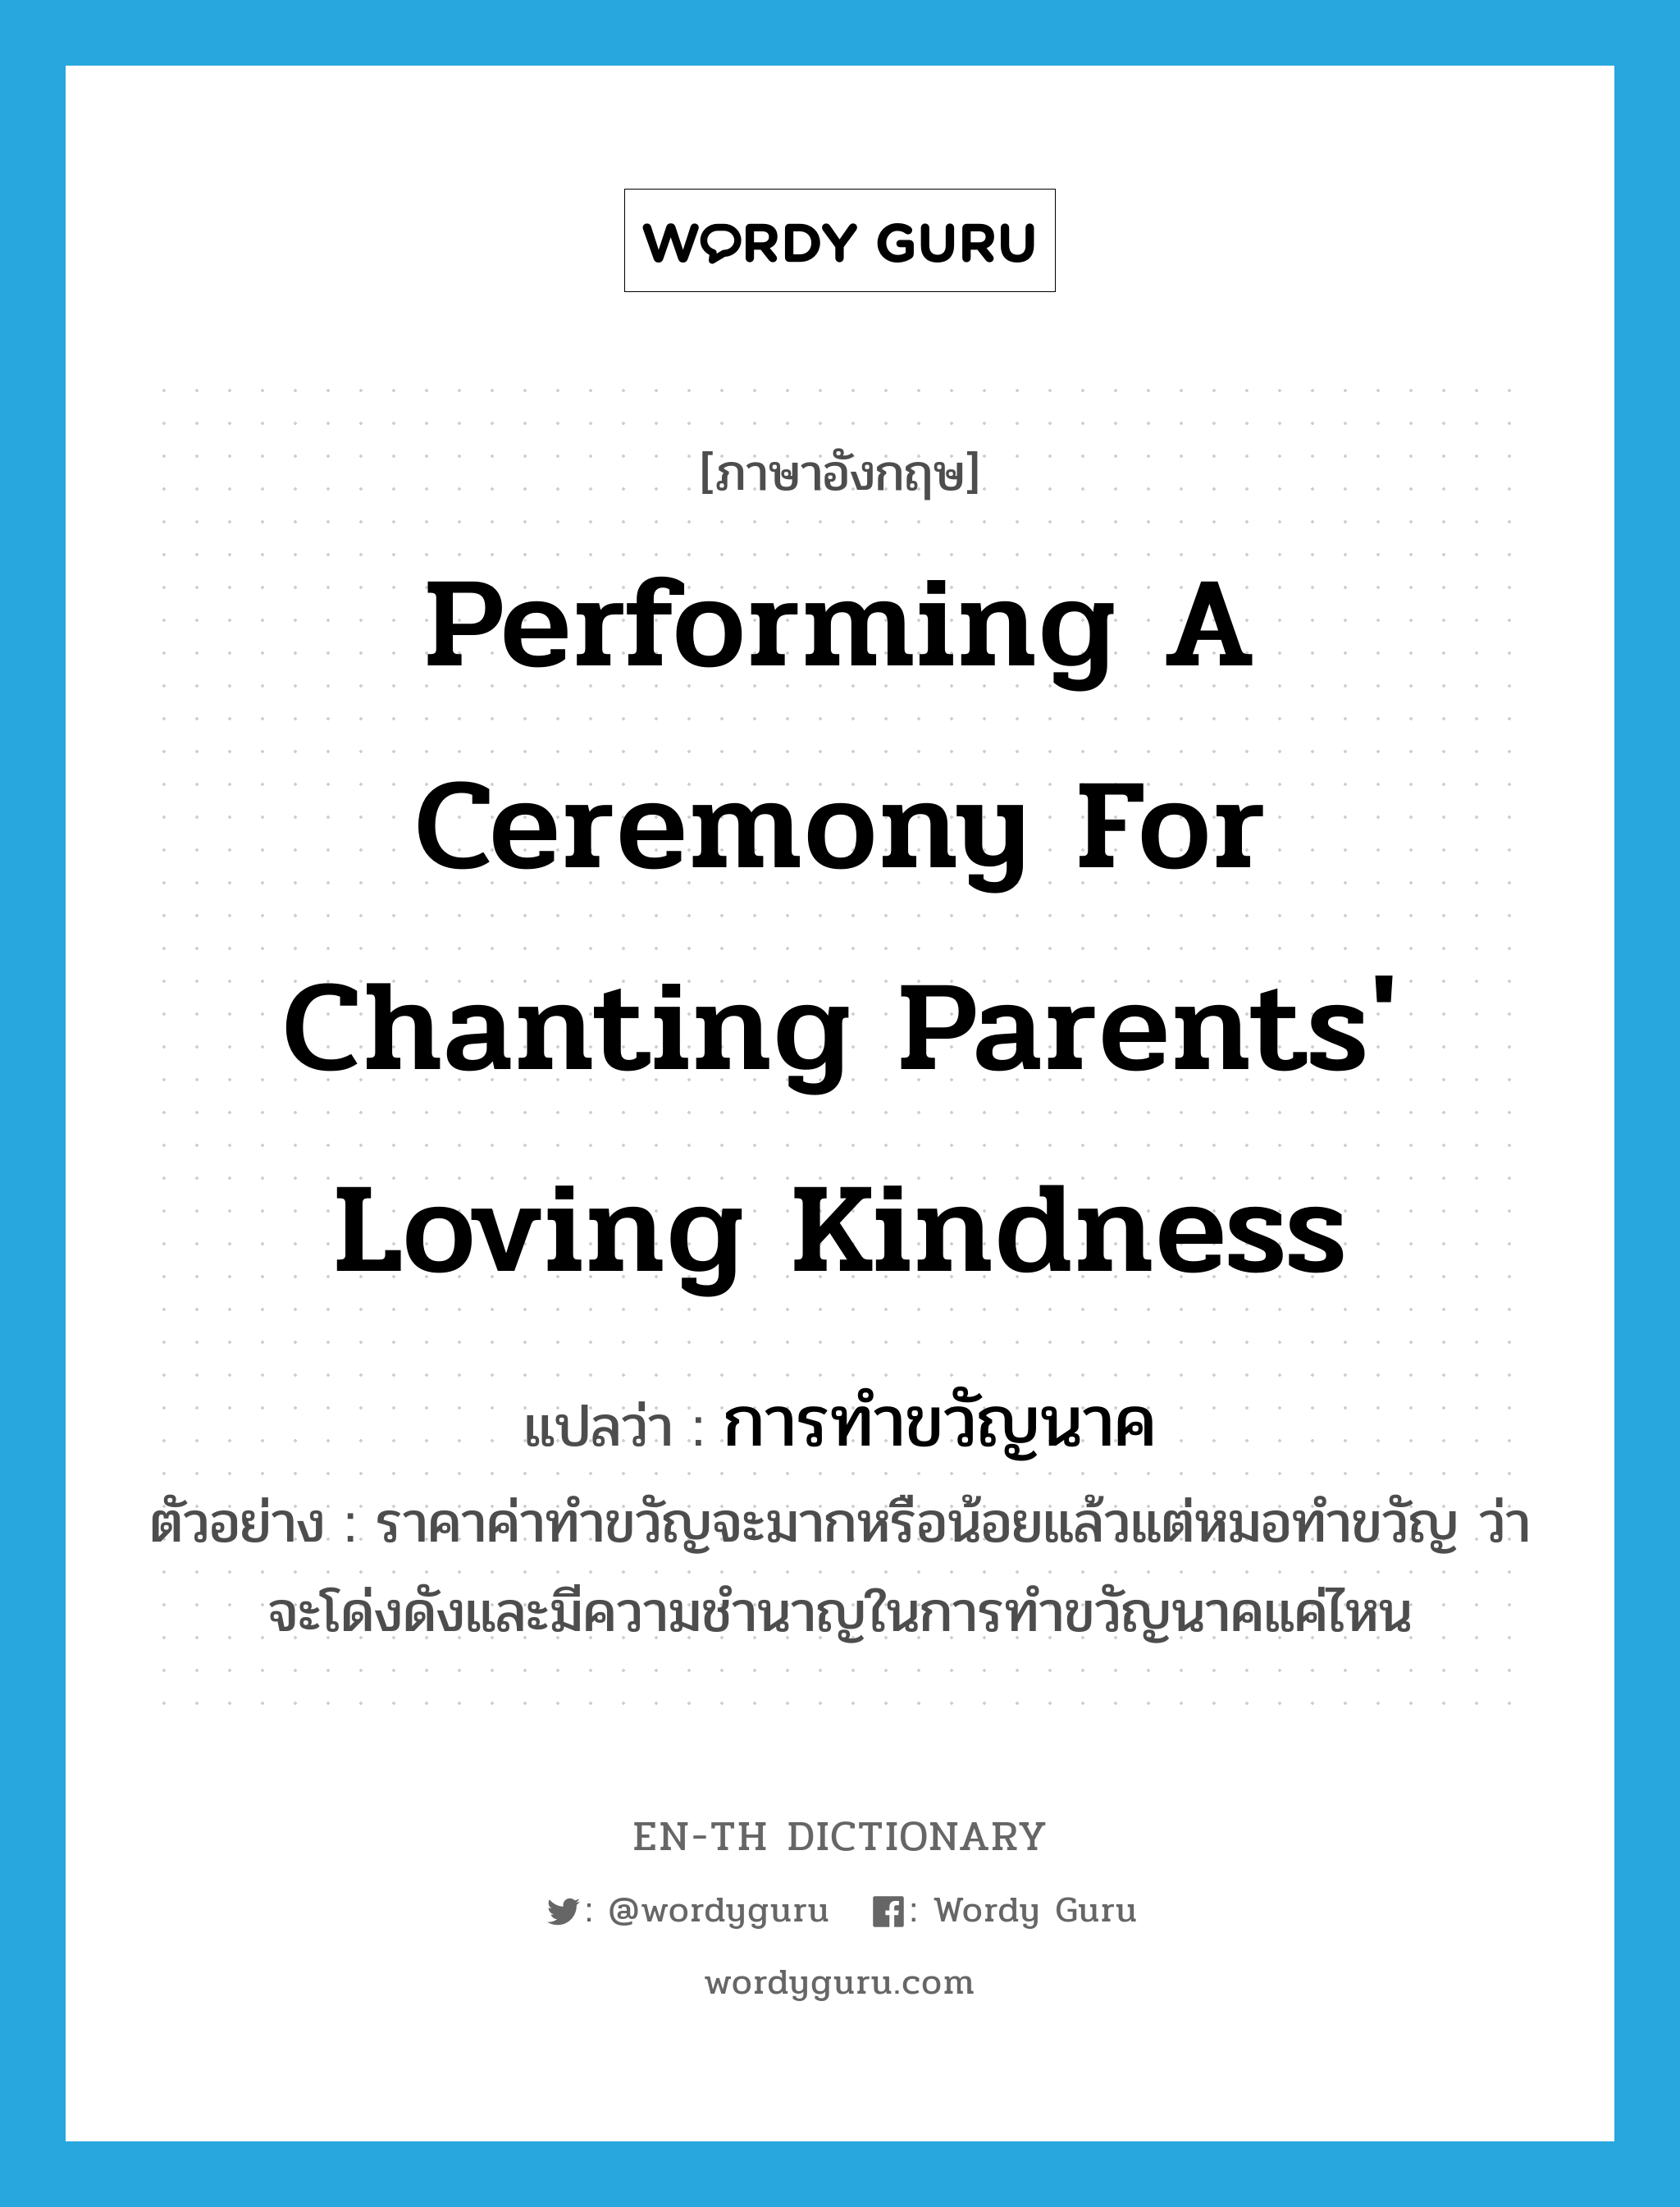 performing a ceremony for chanting parents' loving kindness แปลว่า?, คำศัพท์ภาษาอังกฤษ performing a ceremony for chanting parents' loving kindness แปลว่า การทำขวัญนาค ประเภท N ตัวอย่าง ราคาค่าทำขวัญจะมากหรือน้อยแล้วแต่หมอทำขวัญ ว่าจะโด่งดังและมีความชำนาญในการทำขวัญนาคแค่ไหน หมวด N